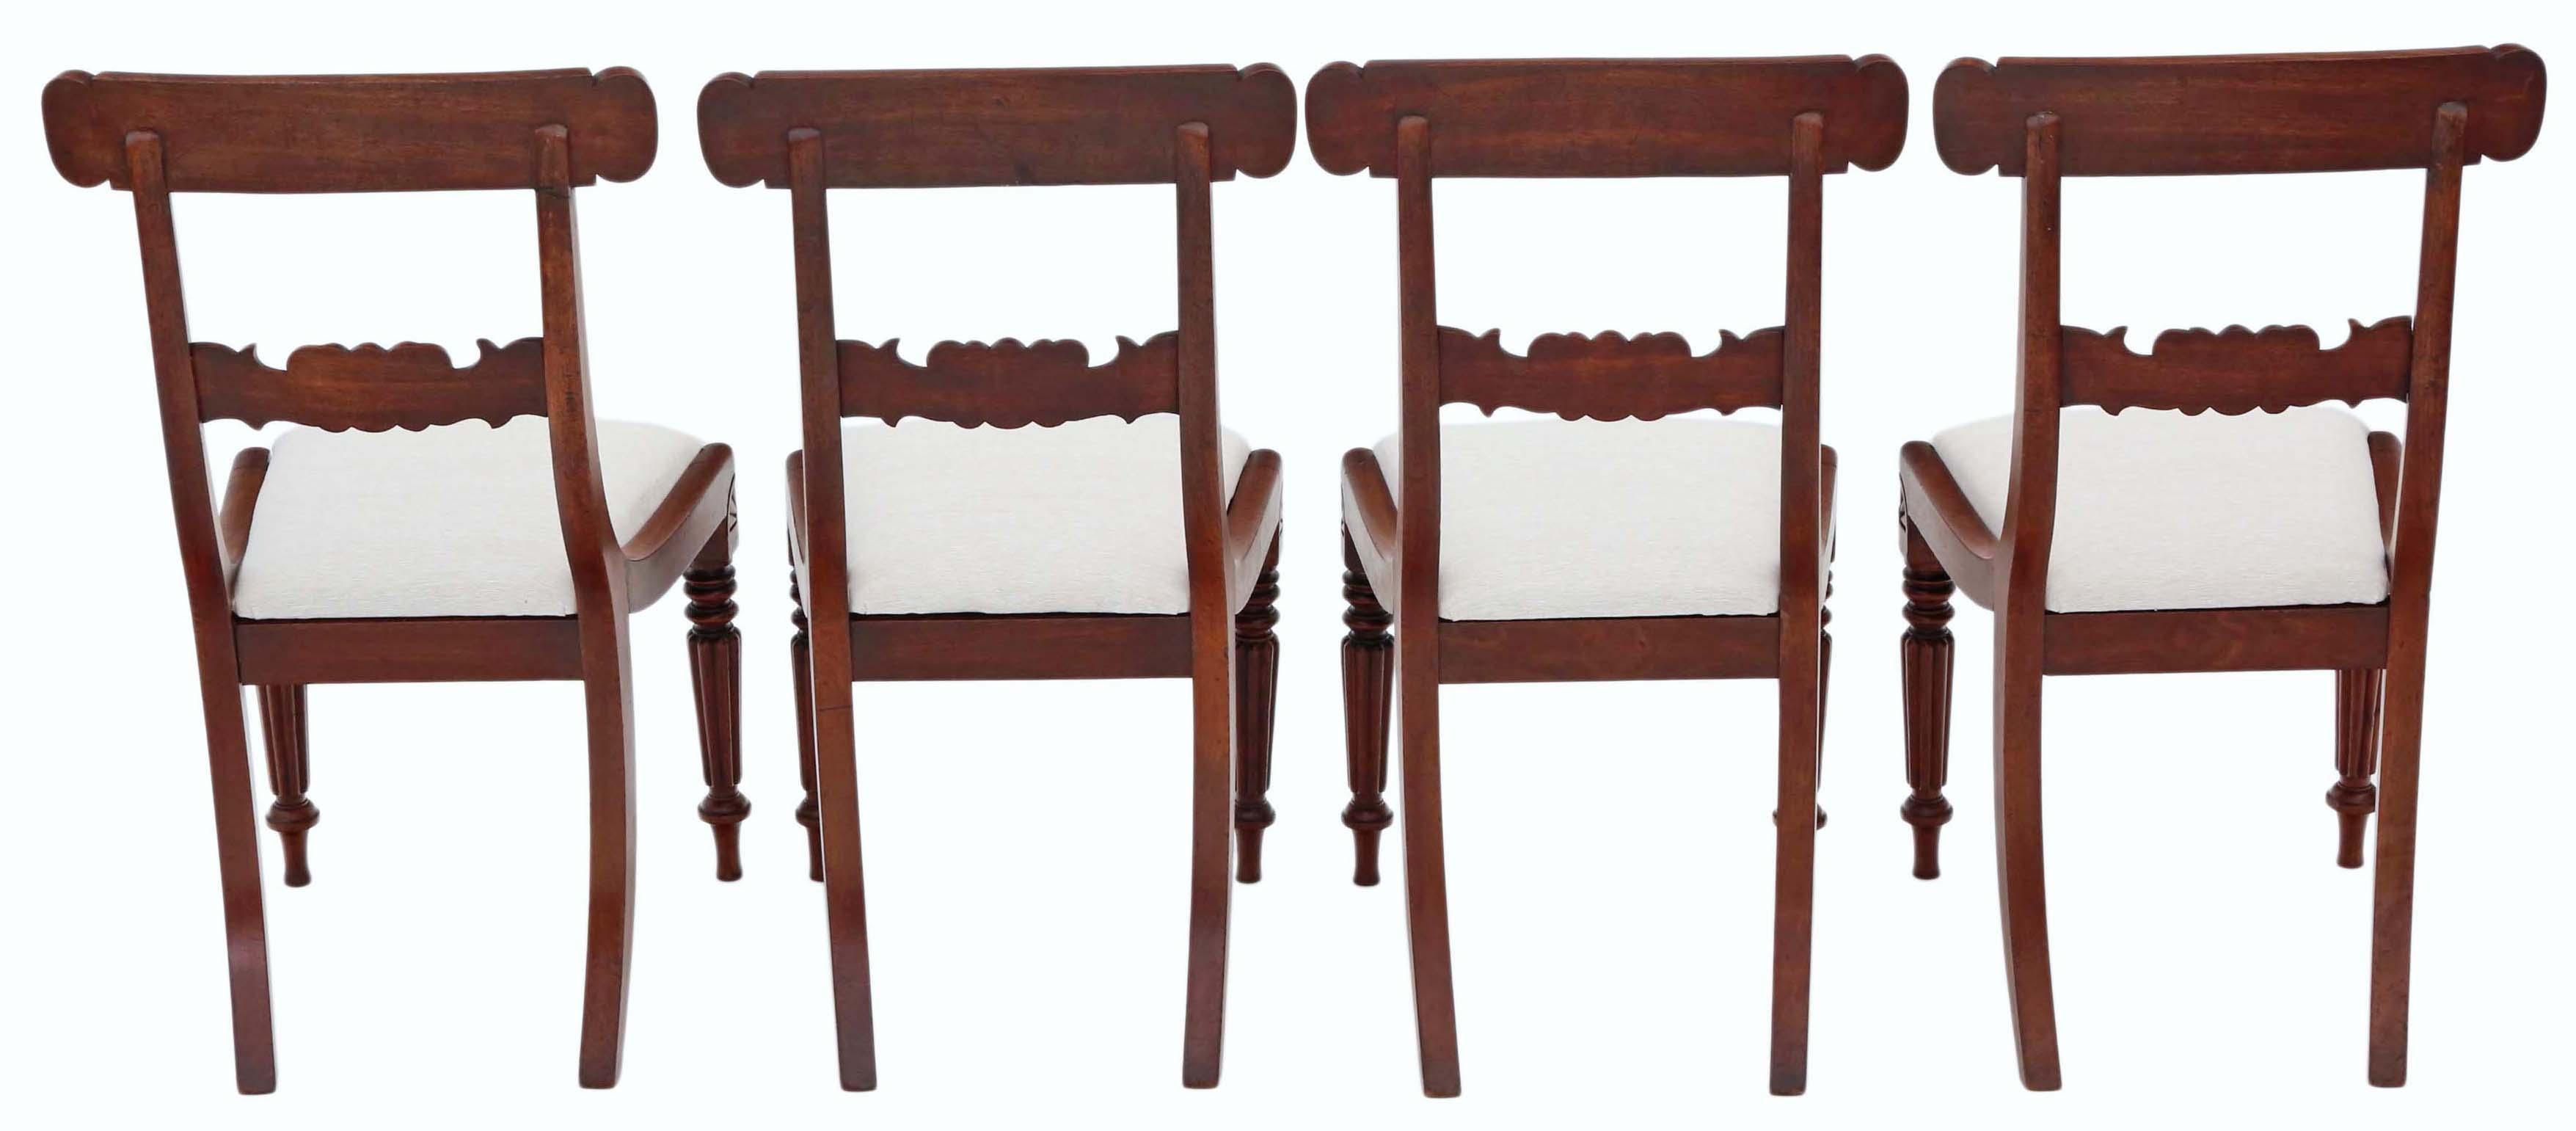 Antiker Satz von 4 geschnitzten William IV. Mahagoni-Esszimmerstühlen aus dem Jahr 1835 mit beeindruckenden, melonenförmigen Beinen.

Diese Stühle sind robust, solide und gut verarbeitet, ohne lose Verbindungen. Sie wurden vor kurzem mit einem